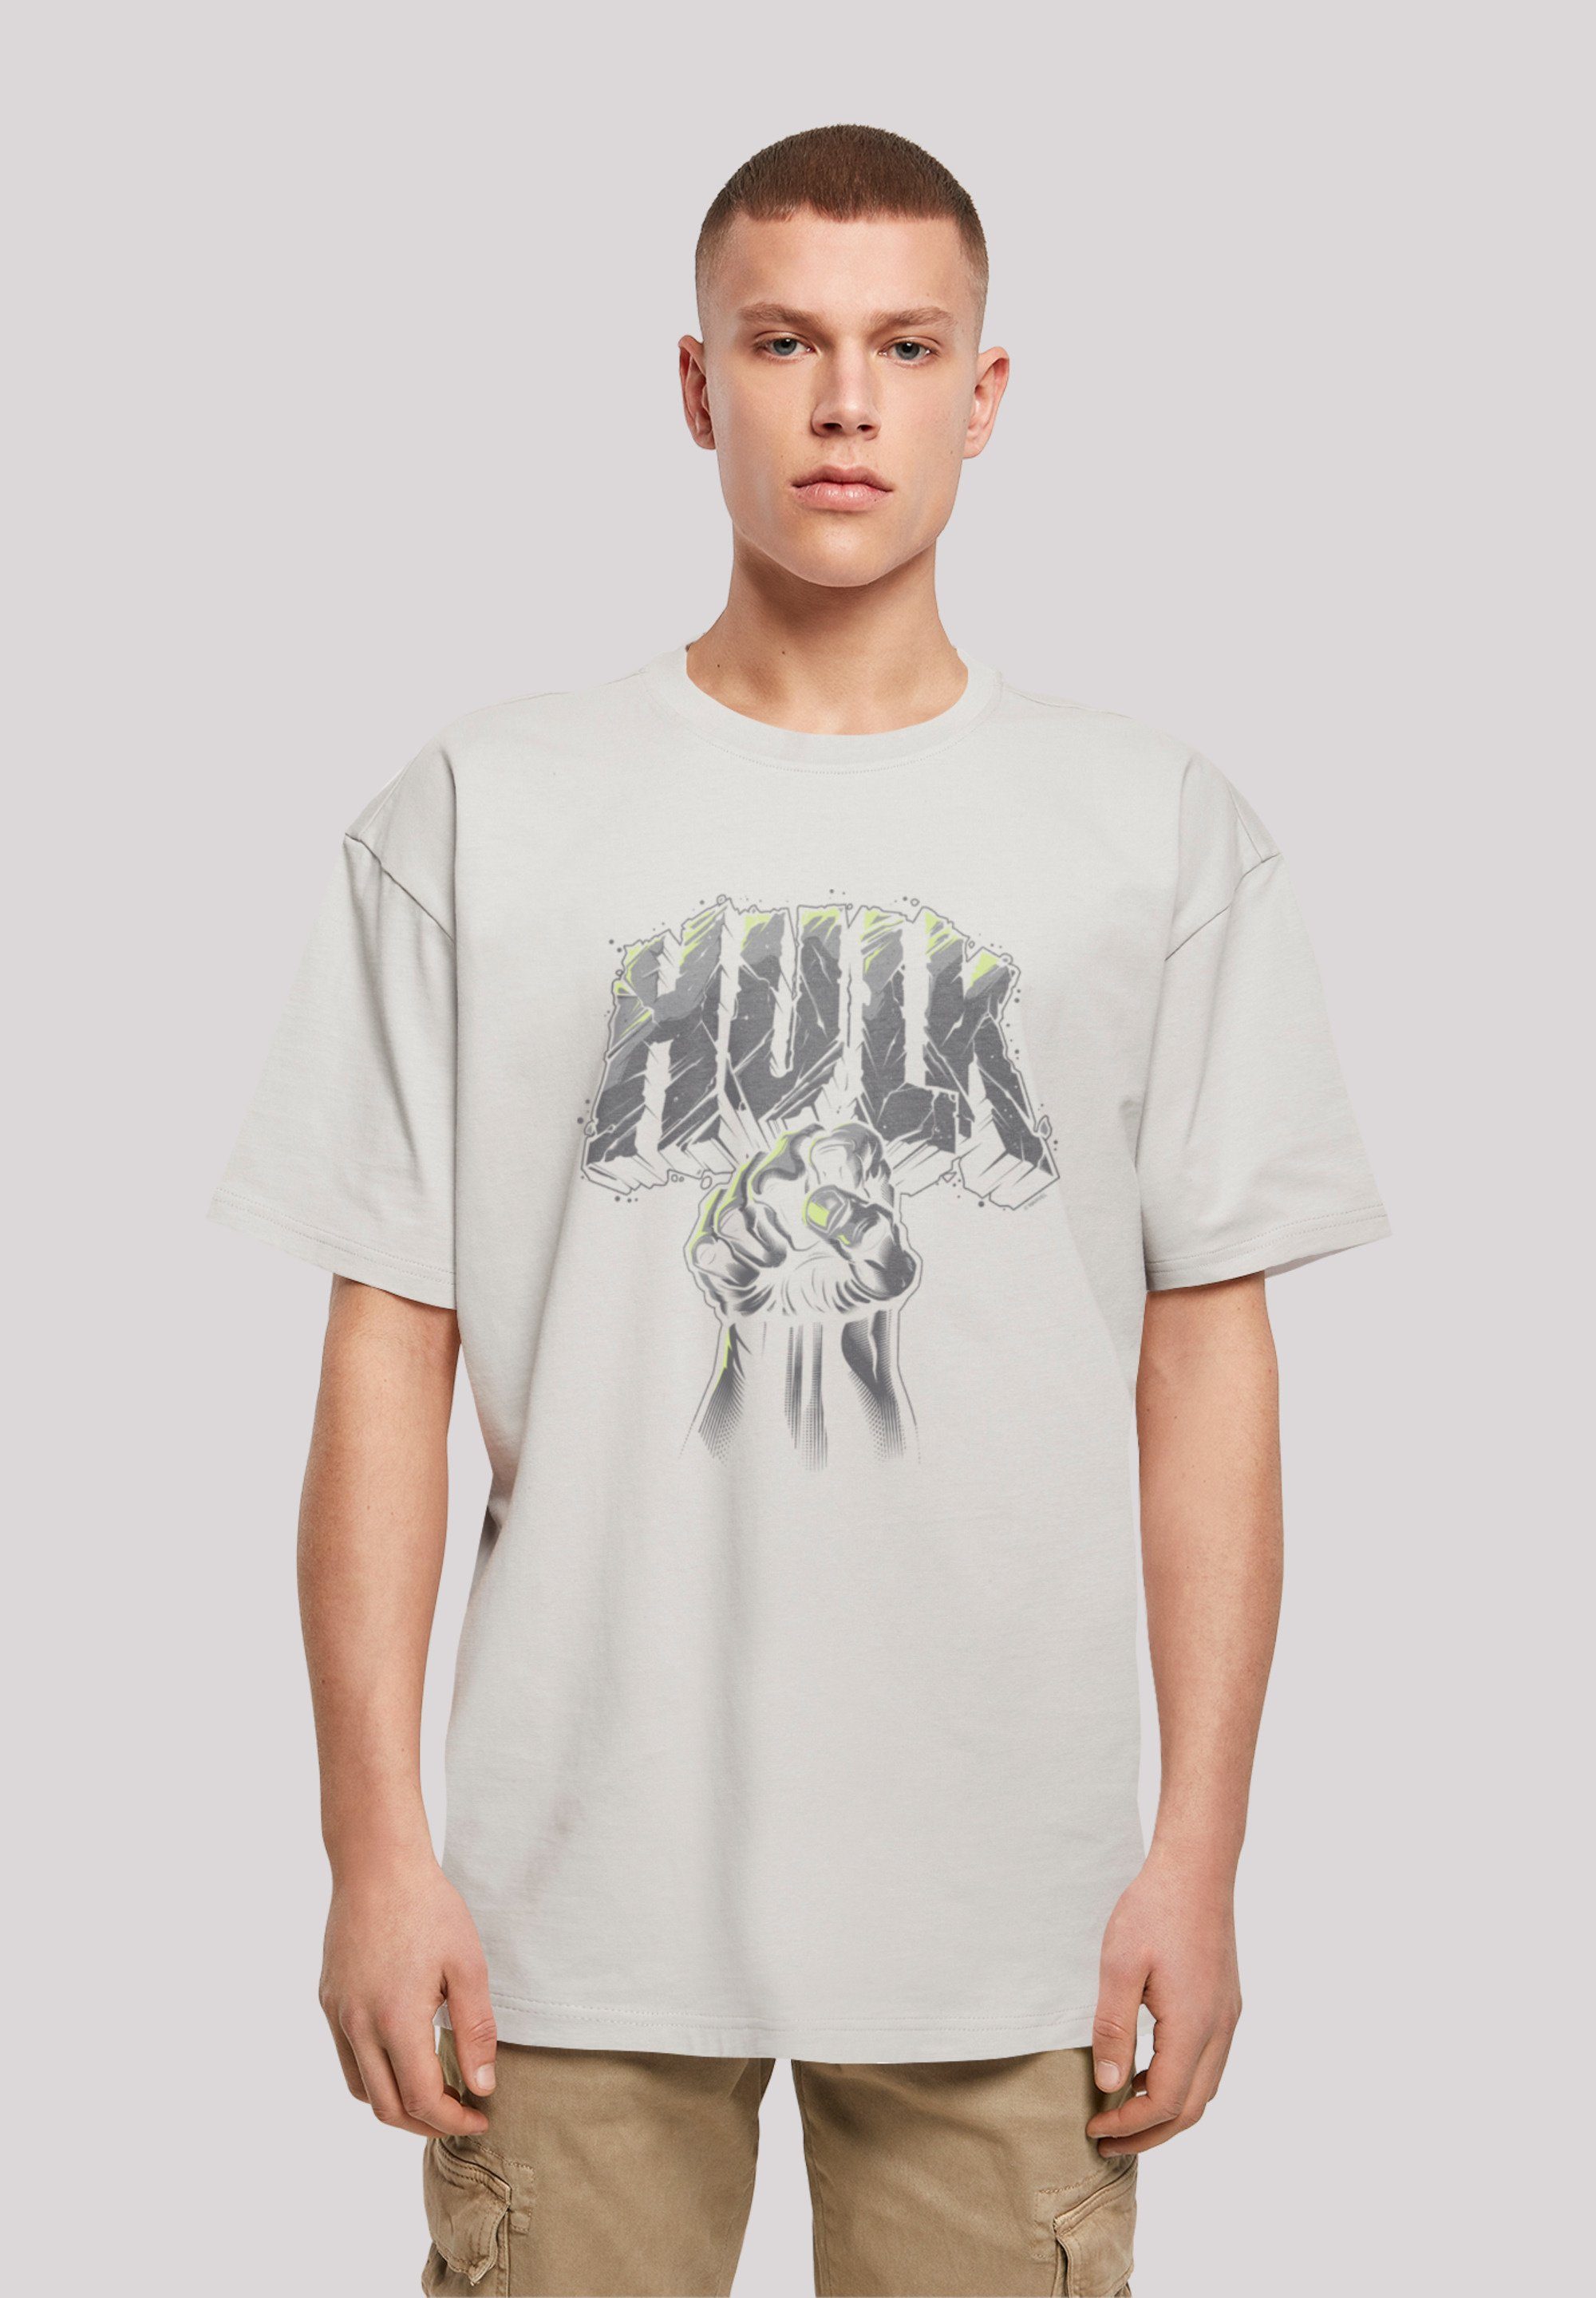 T-Shirt Weite Punch Print, Schultern F4NT4STIC Marvel Hulk und Passform überschnittene Logo